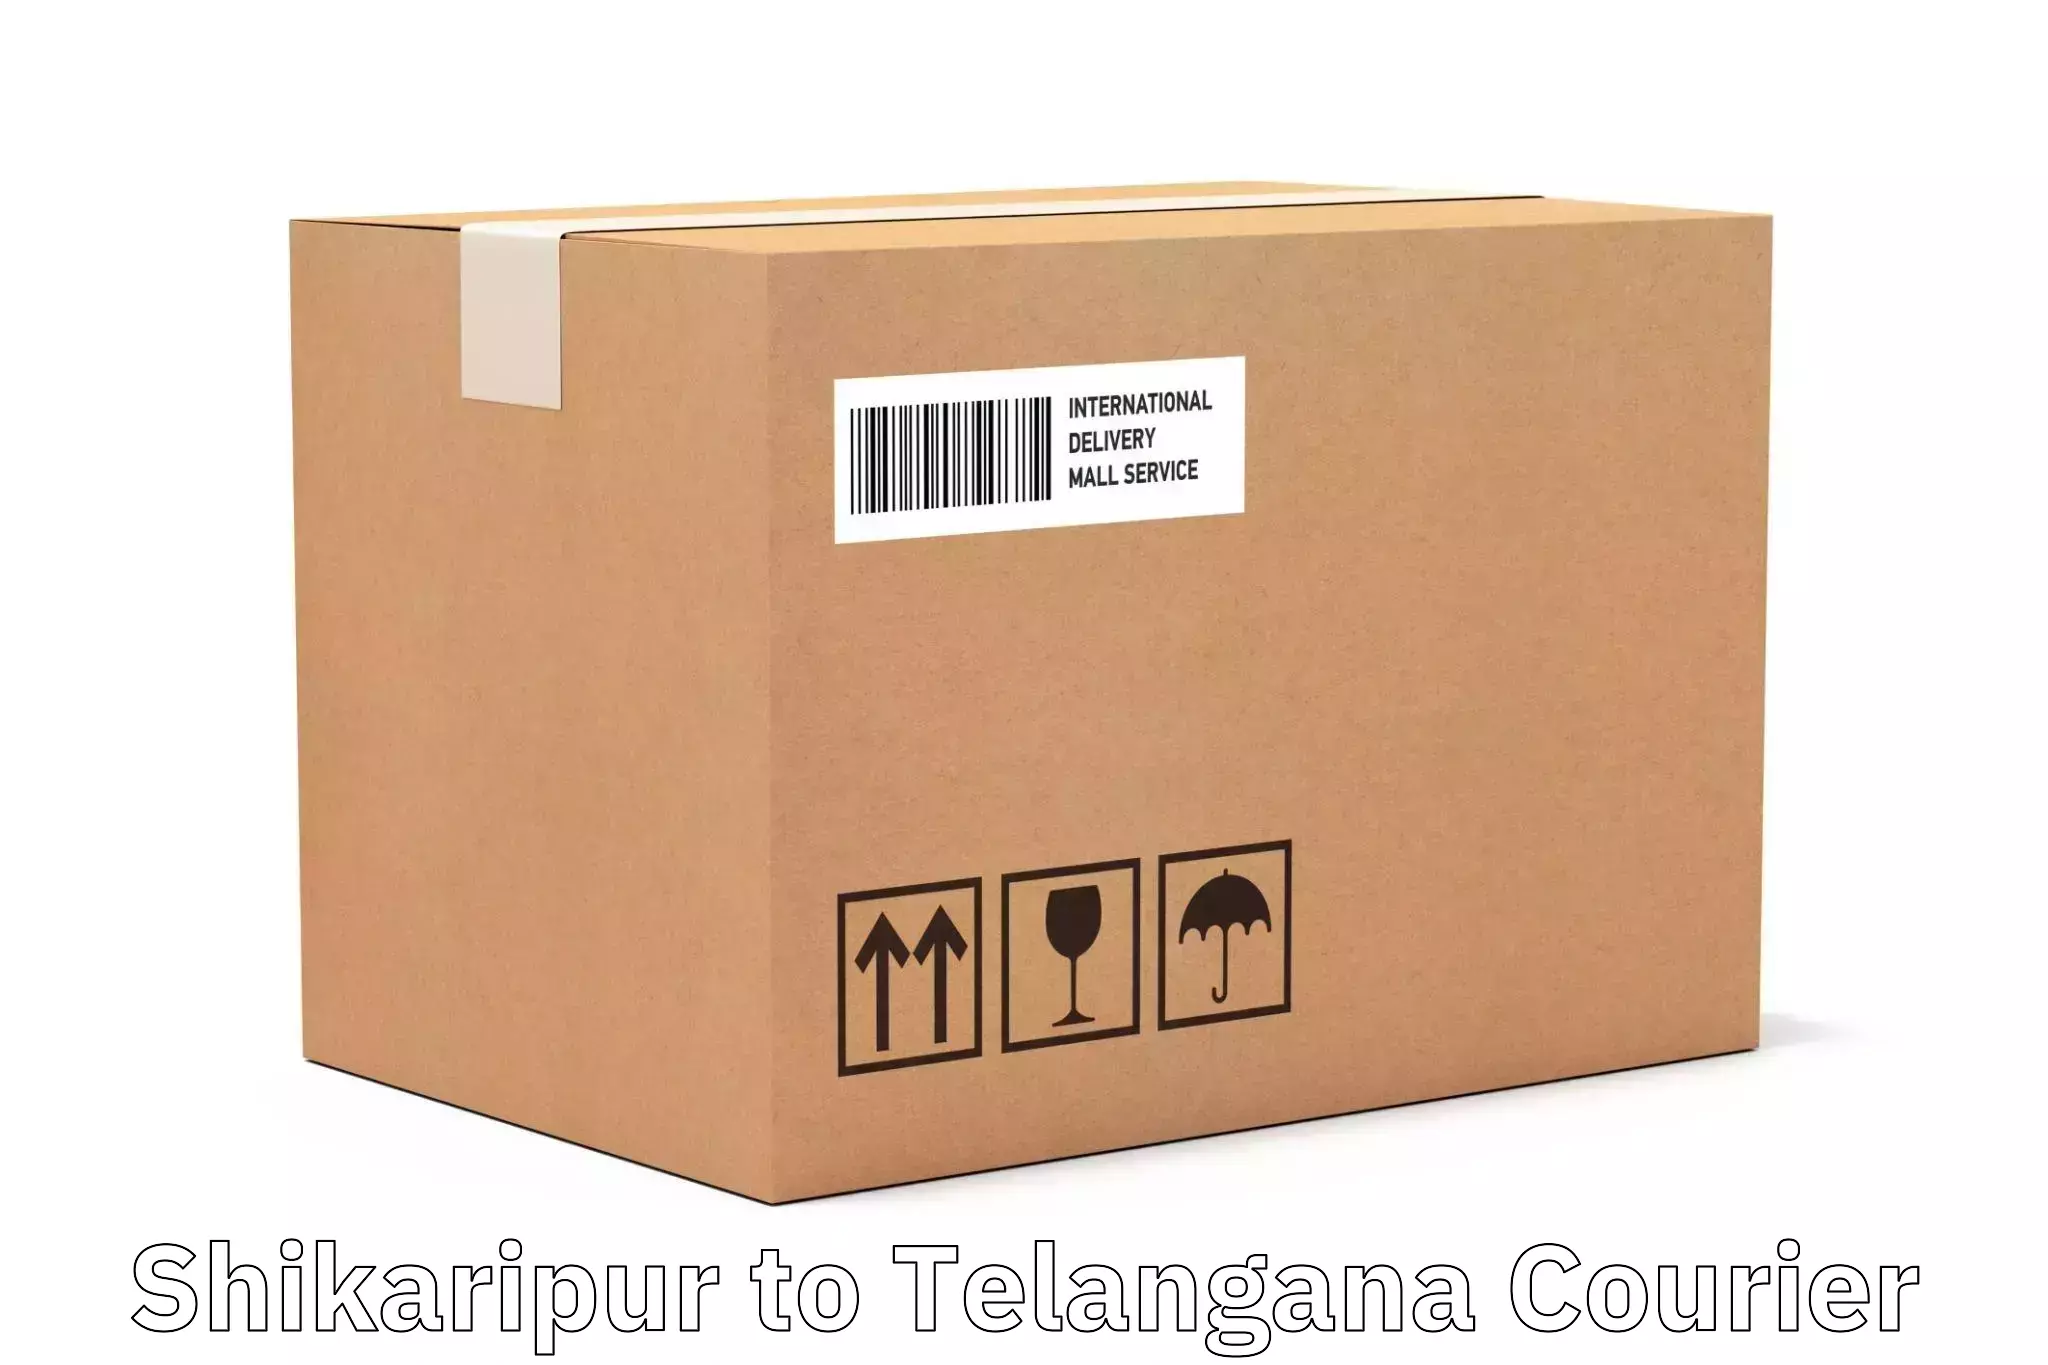 Express postal services Shikaripur to Telangana